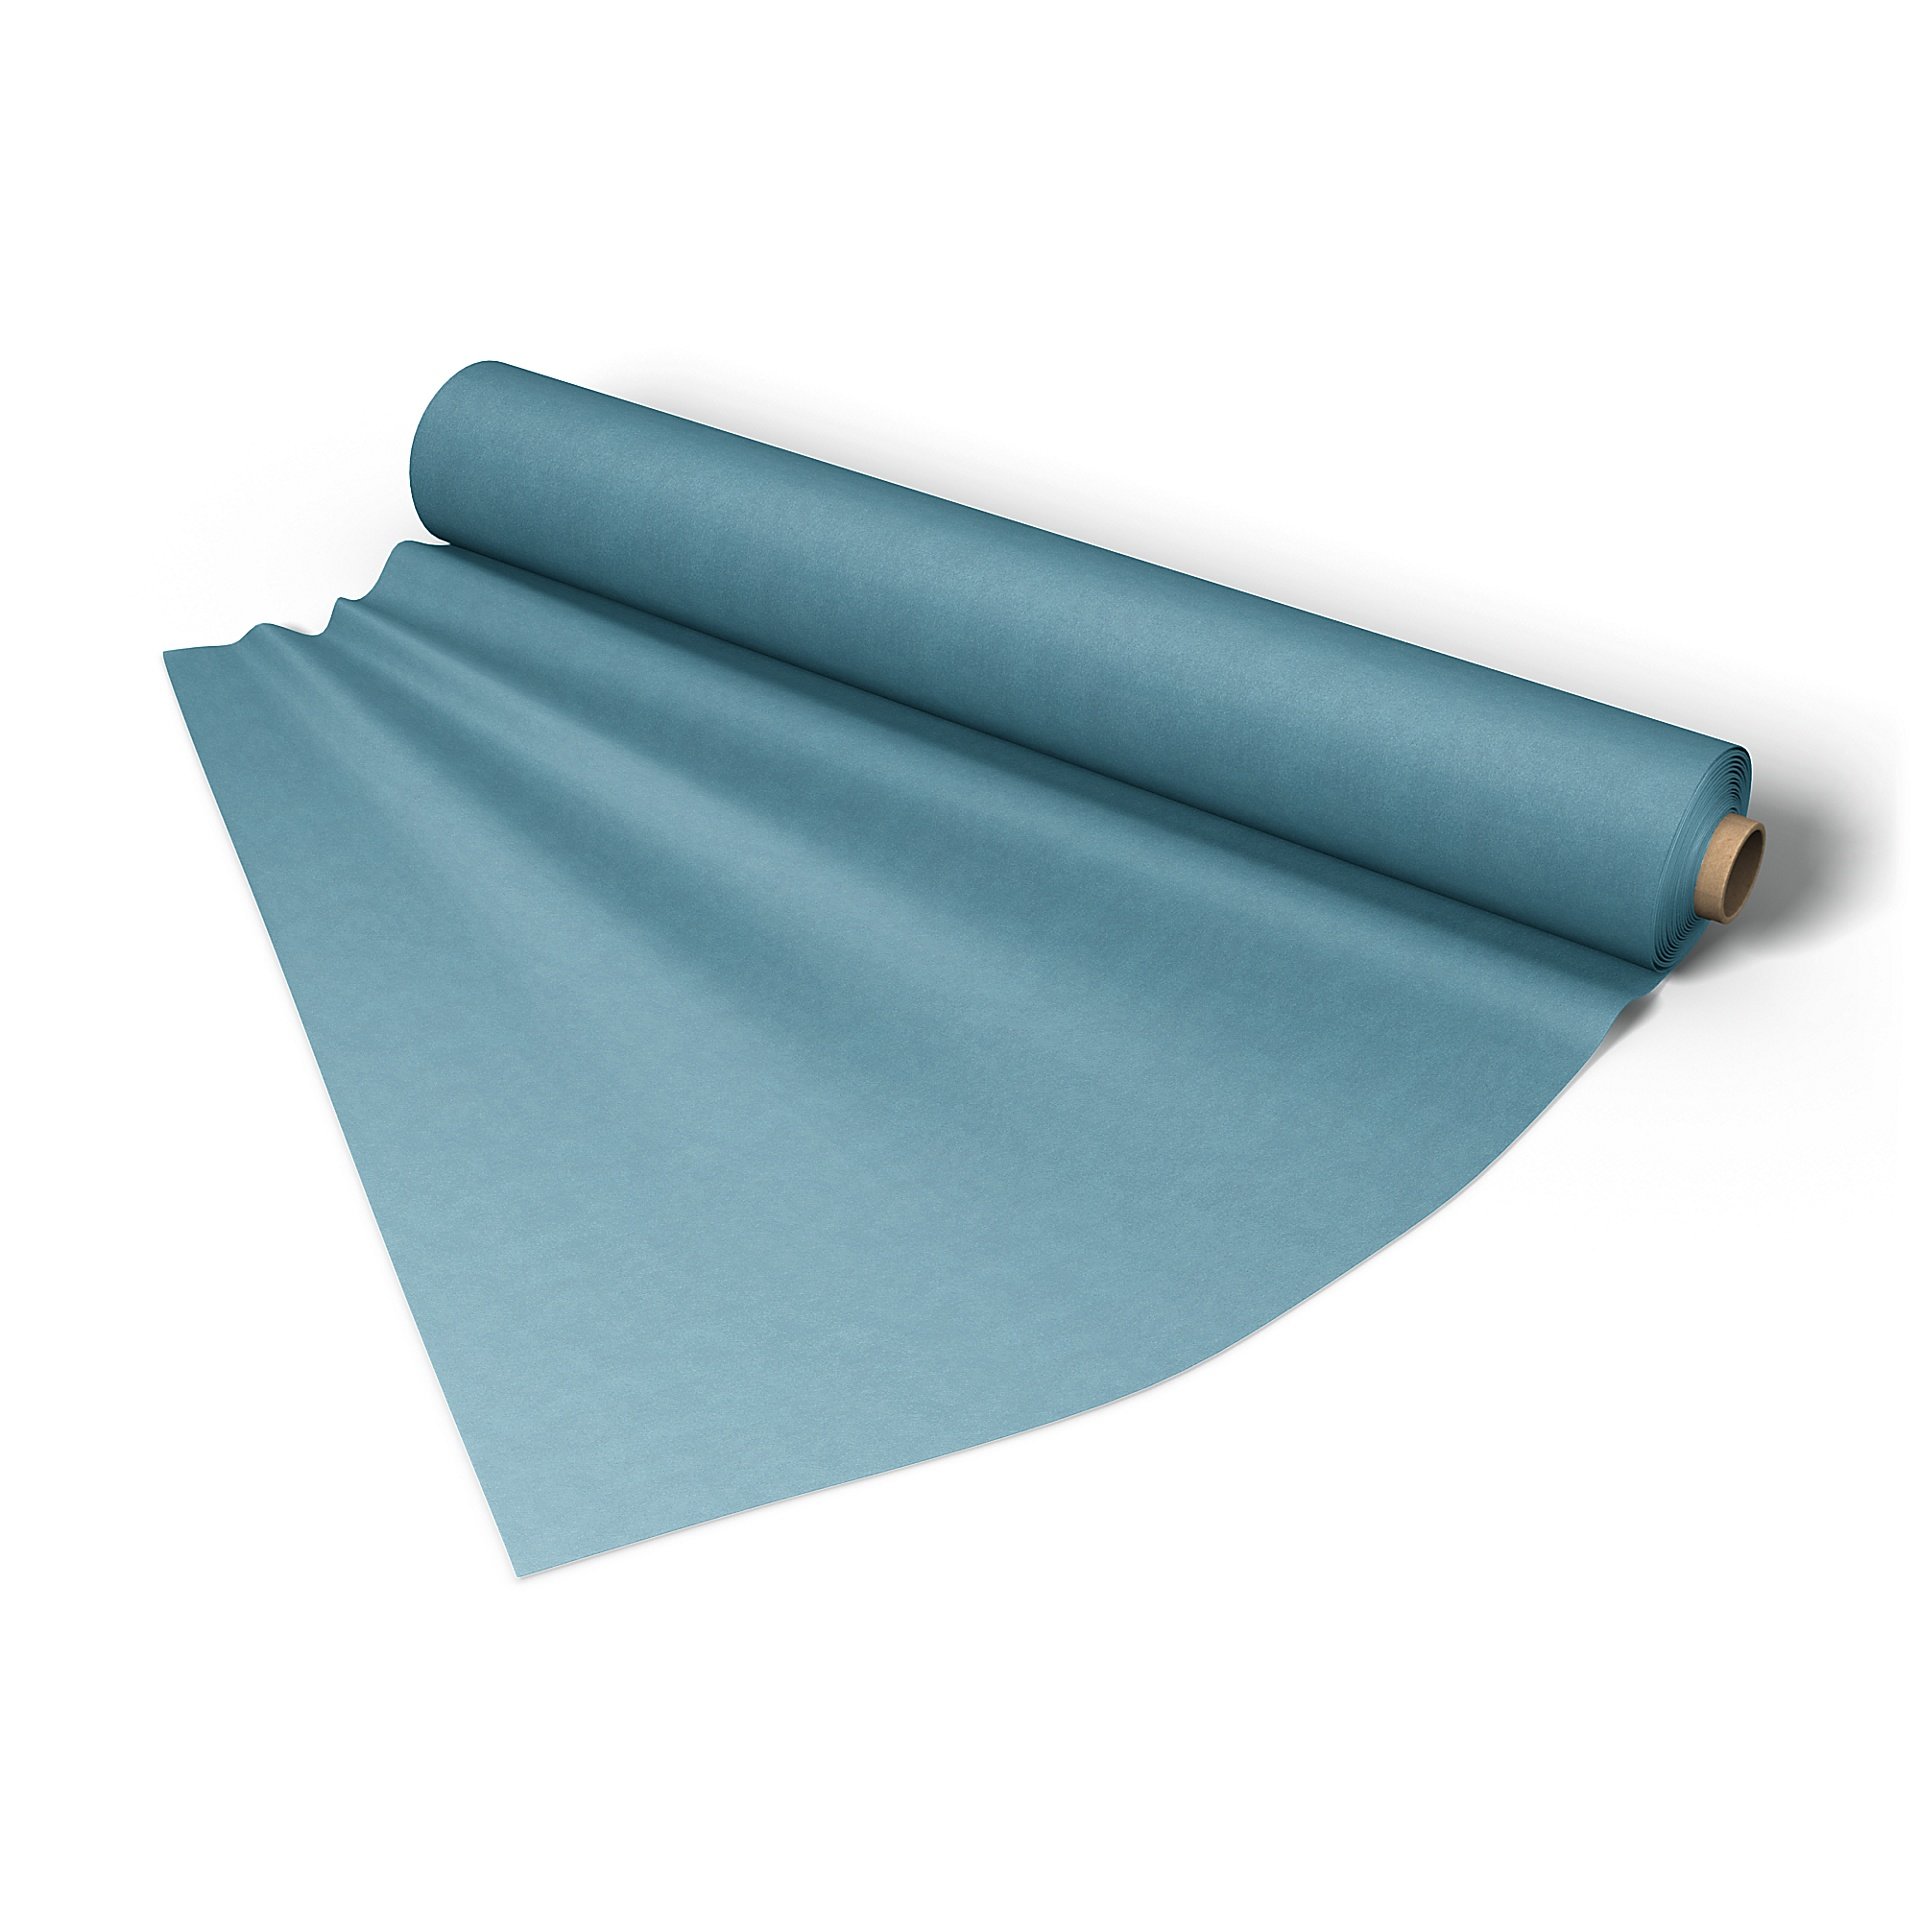 Fabric per metre, Dusk Blue, Outdoor - Bemz